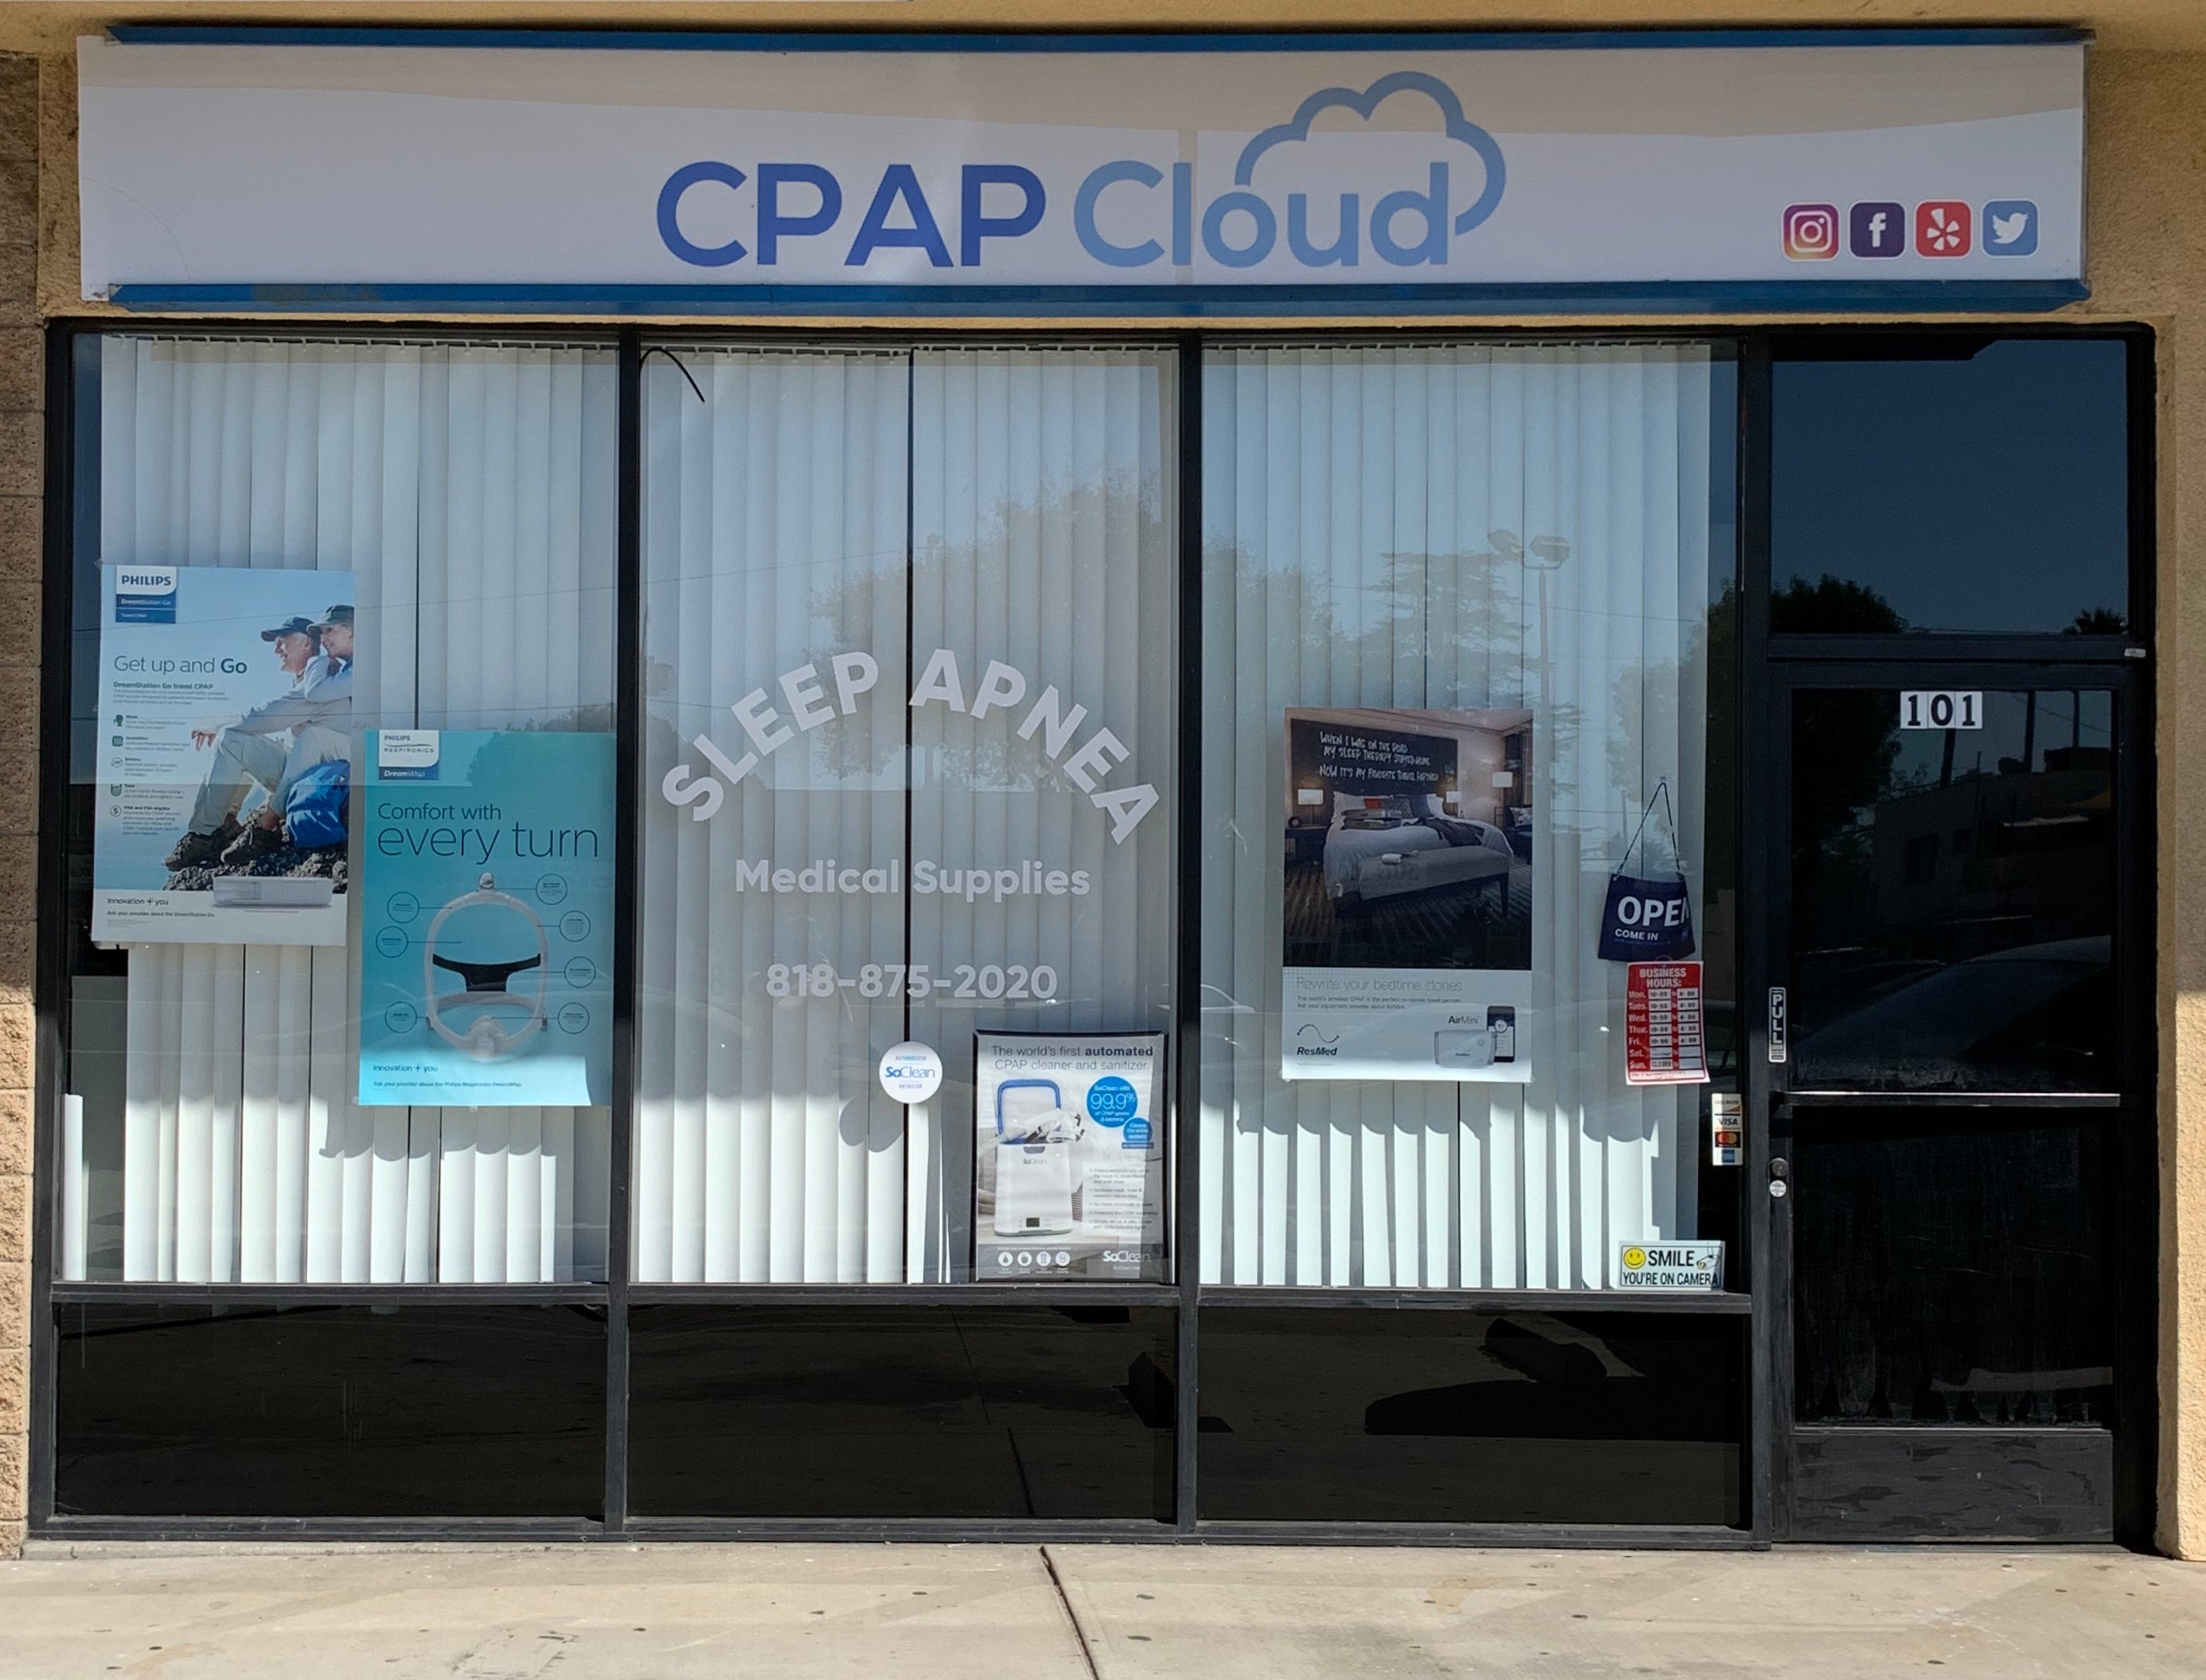 CPAP Cloud